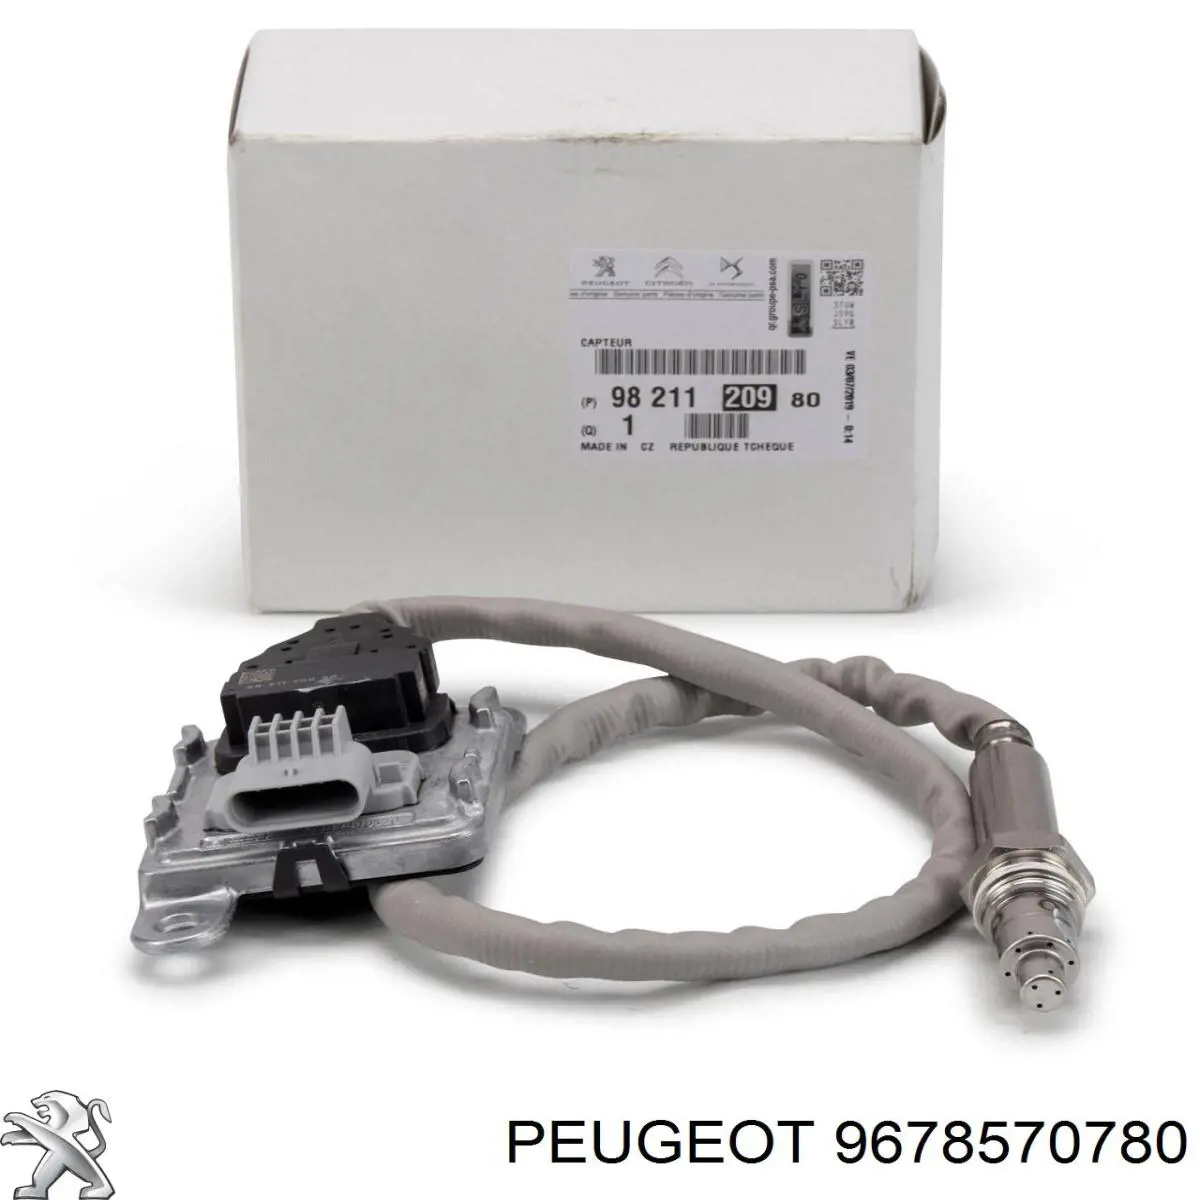 9678570780 Peugeot/Citroen sensor de óxido de nitrógeno nox